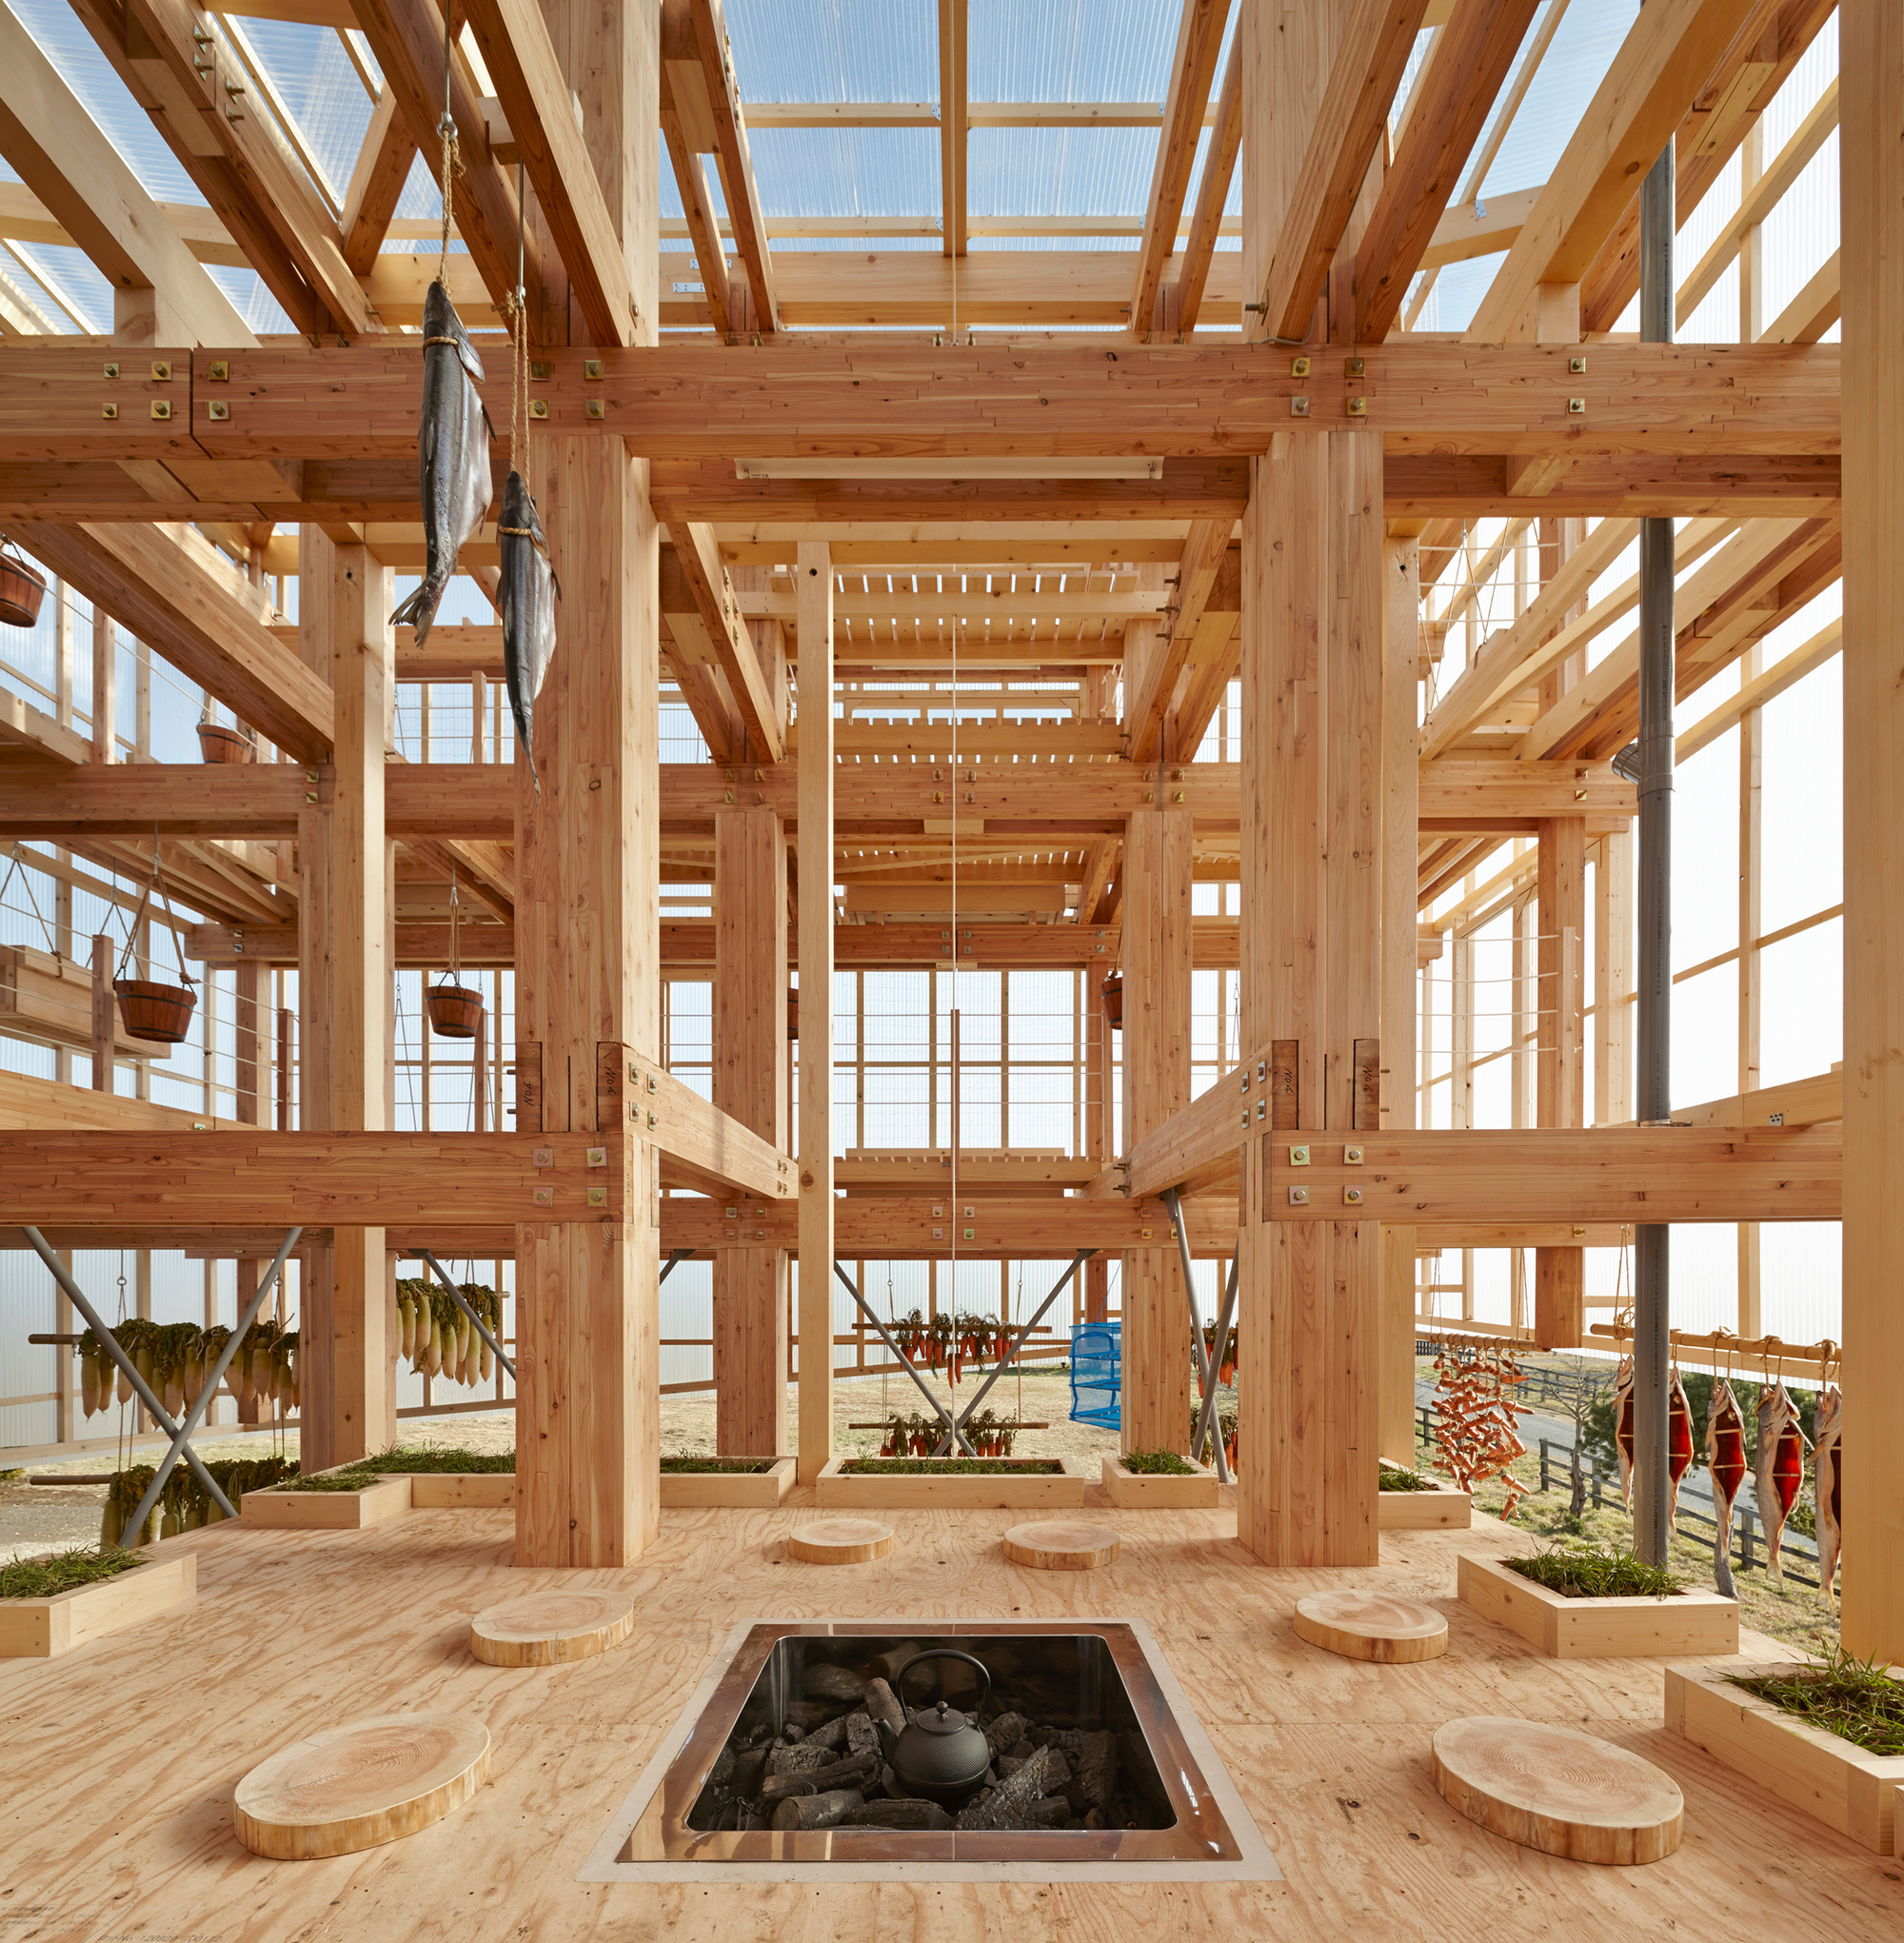 O arquiteto japonês Kengo Kuma é um dos mais famosos entusiastas da construção em madeira. Nesta foto, vemos uma parte da Faculdade de Projetos Ambientais UC Berkeley, nos Estados Unidos, feita por ele e inaugurada em 2014 